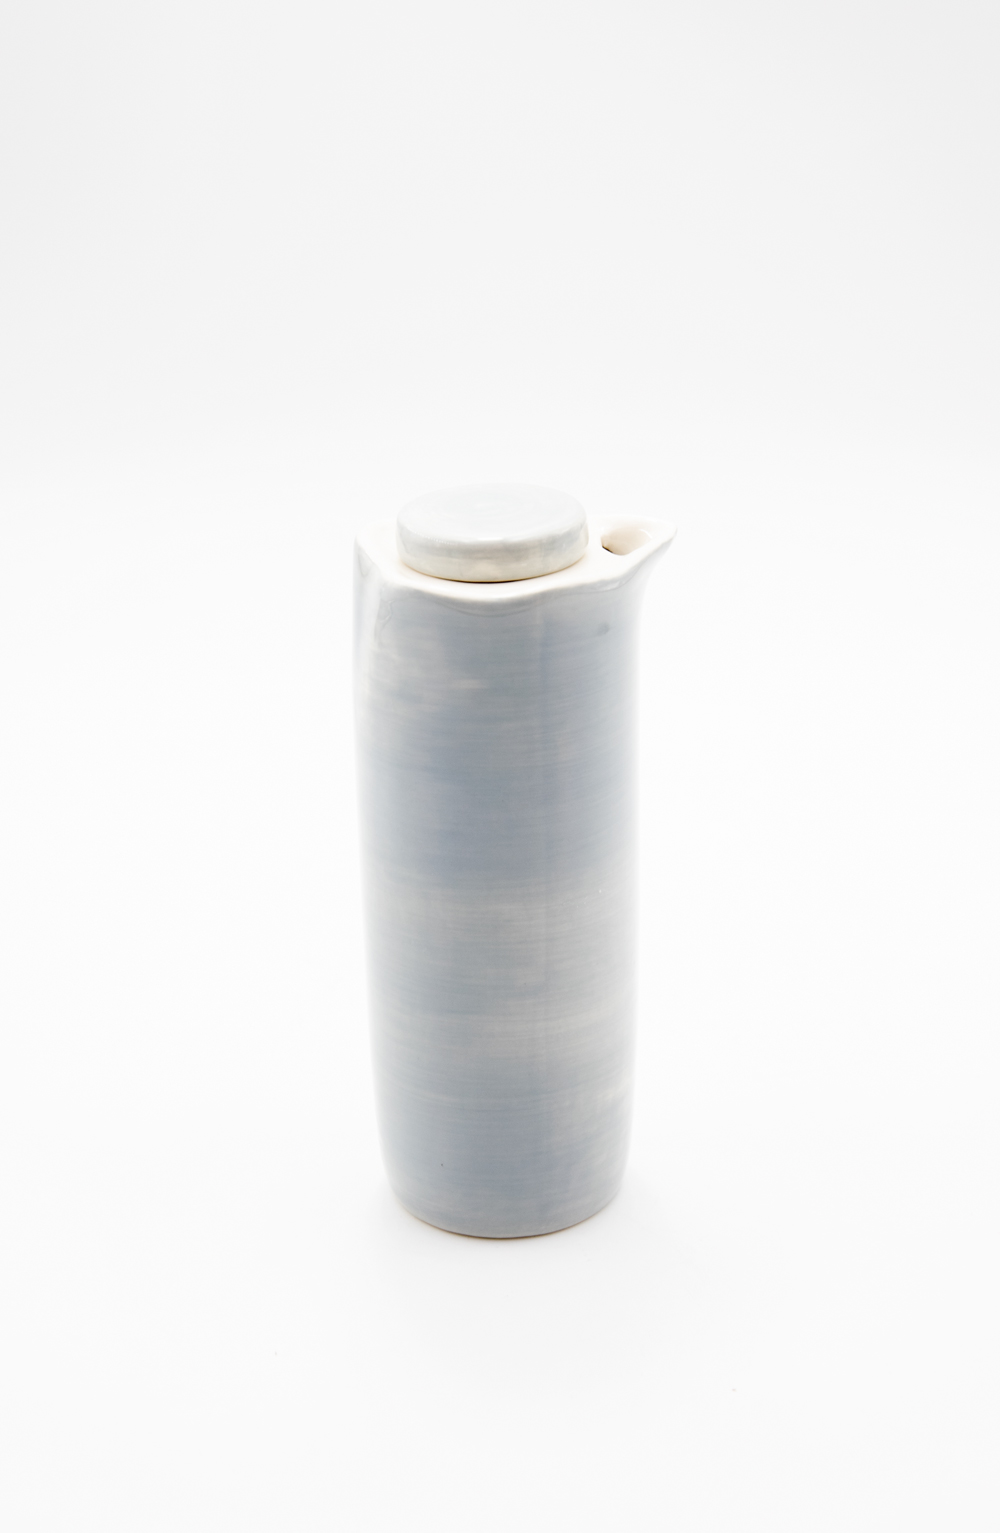 Essig / Ölflasche 2tlg. Set blau Keramik Landhausstil